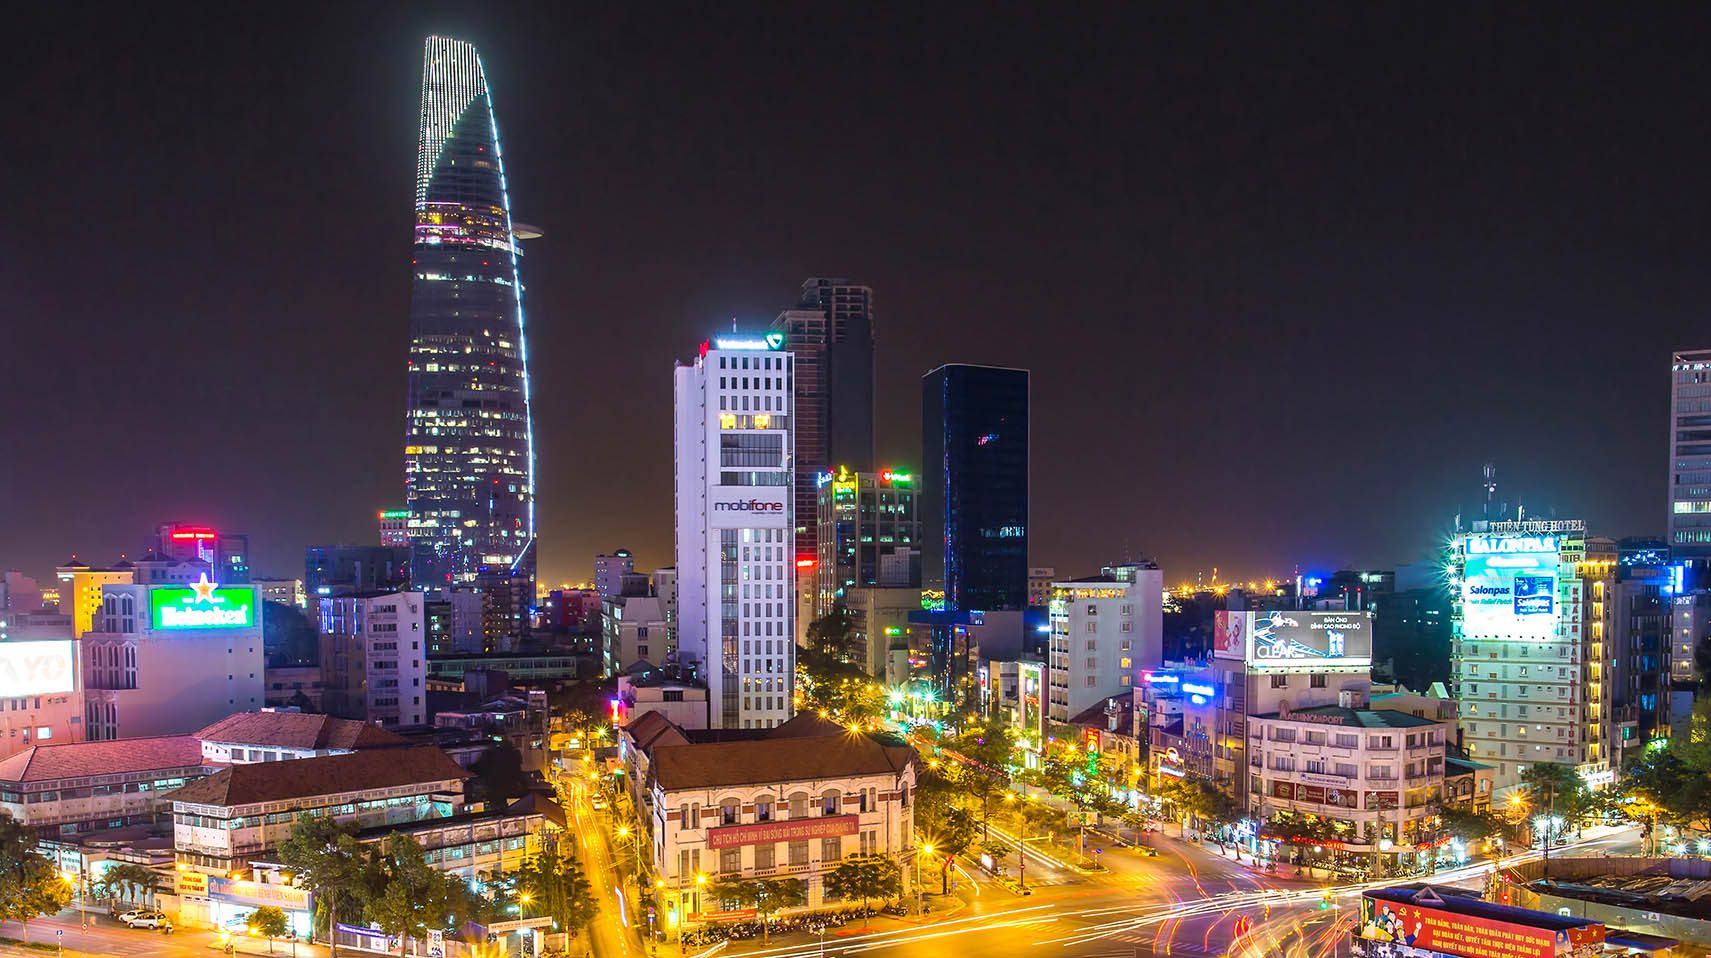 Ho-Chi-Minh-Stadt (HCMC) zählt fast 7,7 Millionen Einwohner und erlebt derzeit eine Phase dynamischen Wirtschaftswachstums, industrieller Expansion und veränderter Landnutzung, was die Stadt zu einem attraktiven Geschäftsstandort macht und ihren Reichtum steigert. Siemens ist seit 1979 in Vietnam präsent und dort seit 1993 offiziell niedergelassen.

Ho Chi Minh City (HCMC) with its nearly 7.7 million inhabitants is witnessing a dynamic phase of economic growth, industrial expansion and land use change which is transforming the city's fortunes and attracting business opportunities. Siemens has been present in Vietnam since 1979 and was officially established since 1993.